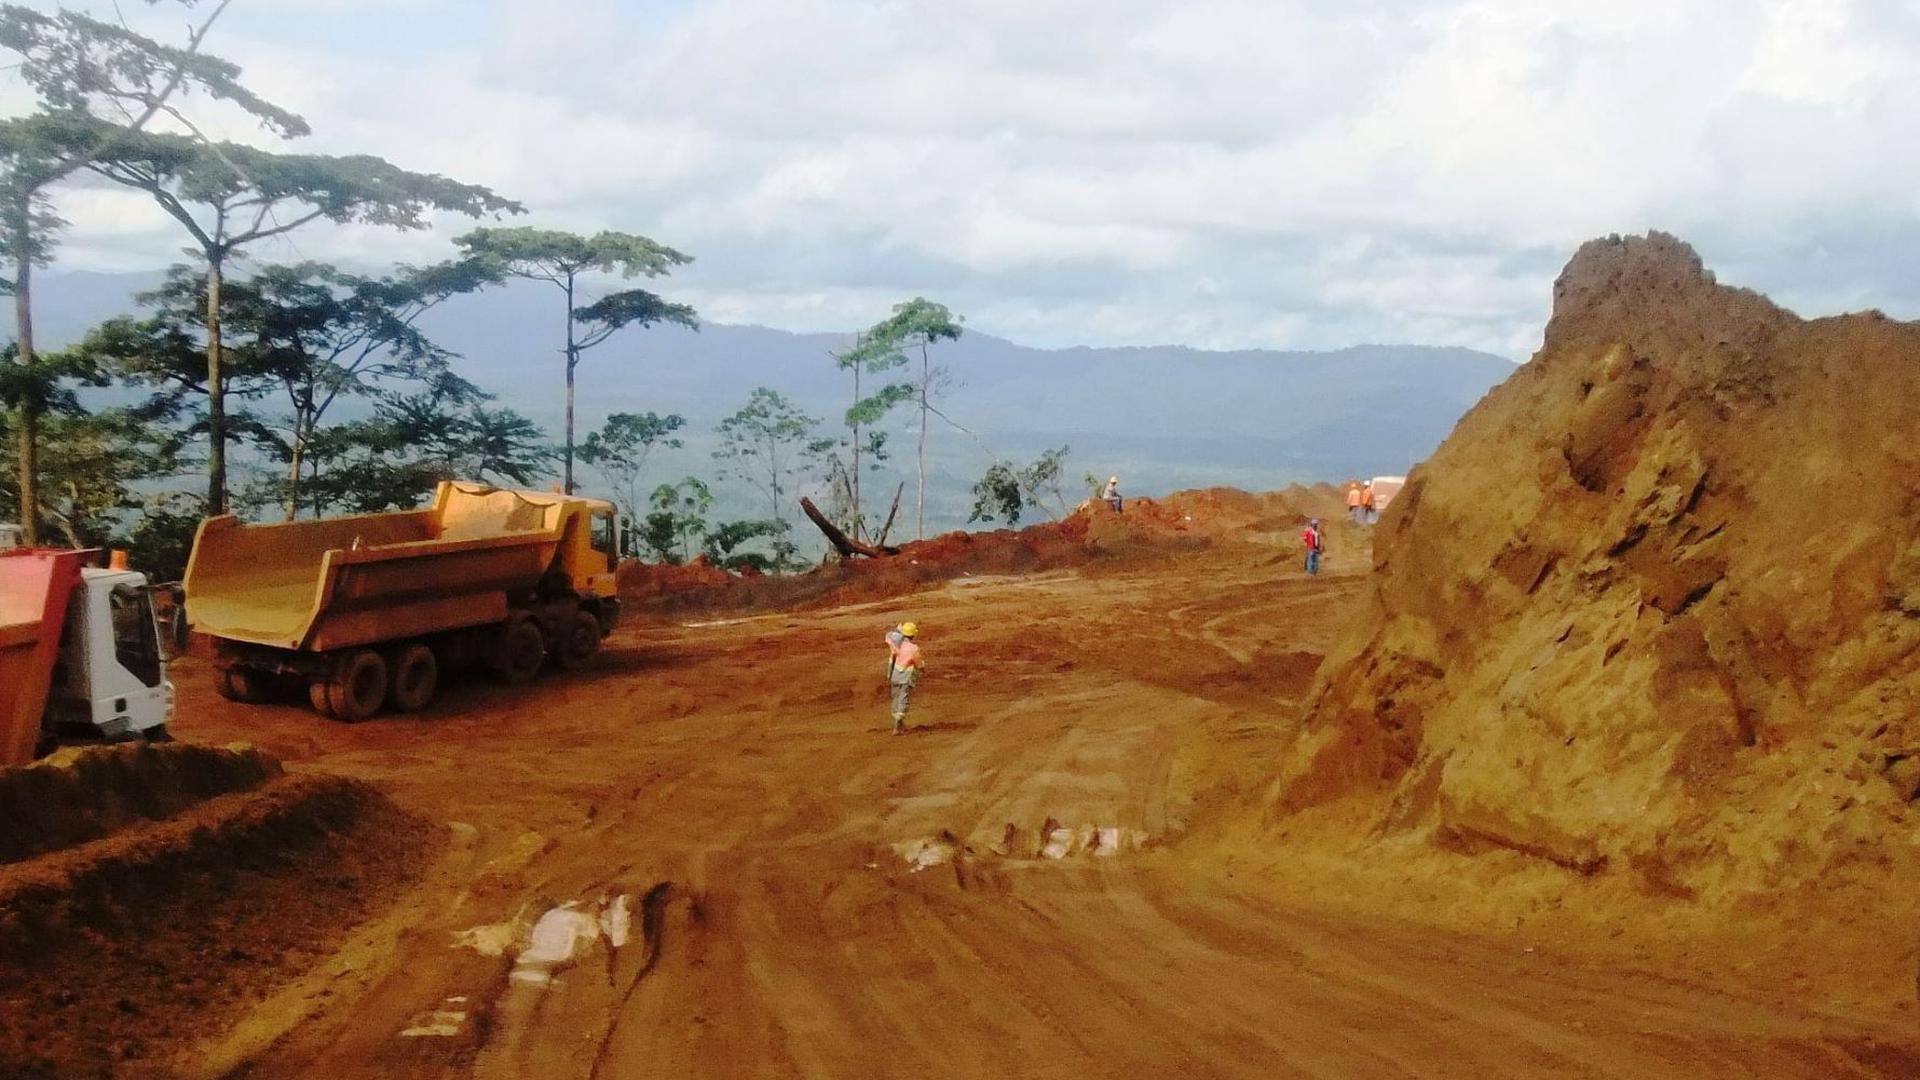 Iron ore mining in Liberia